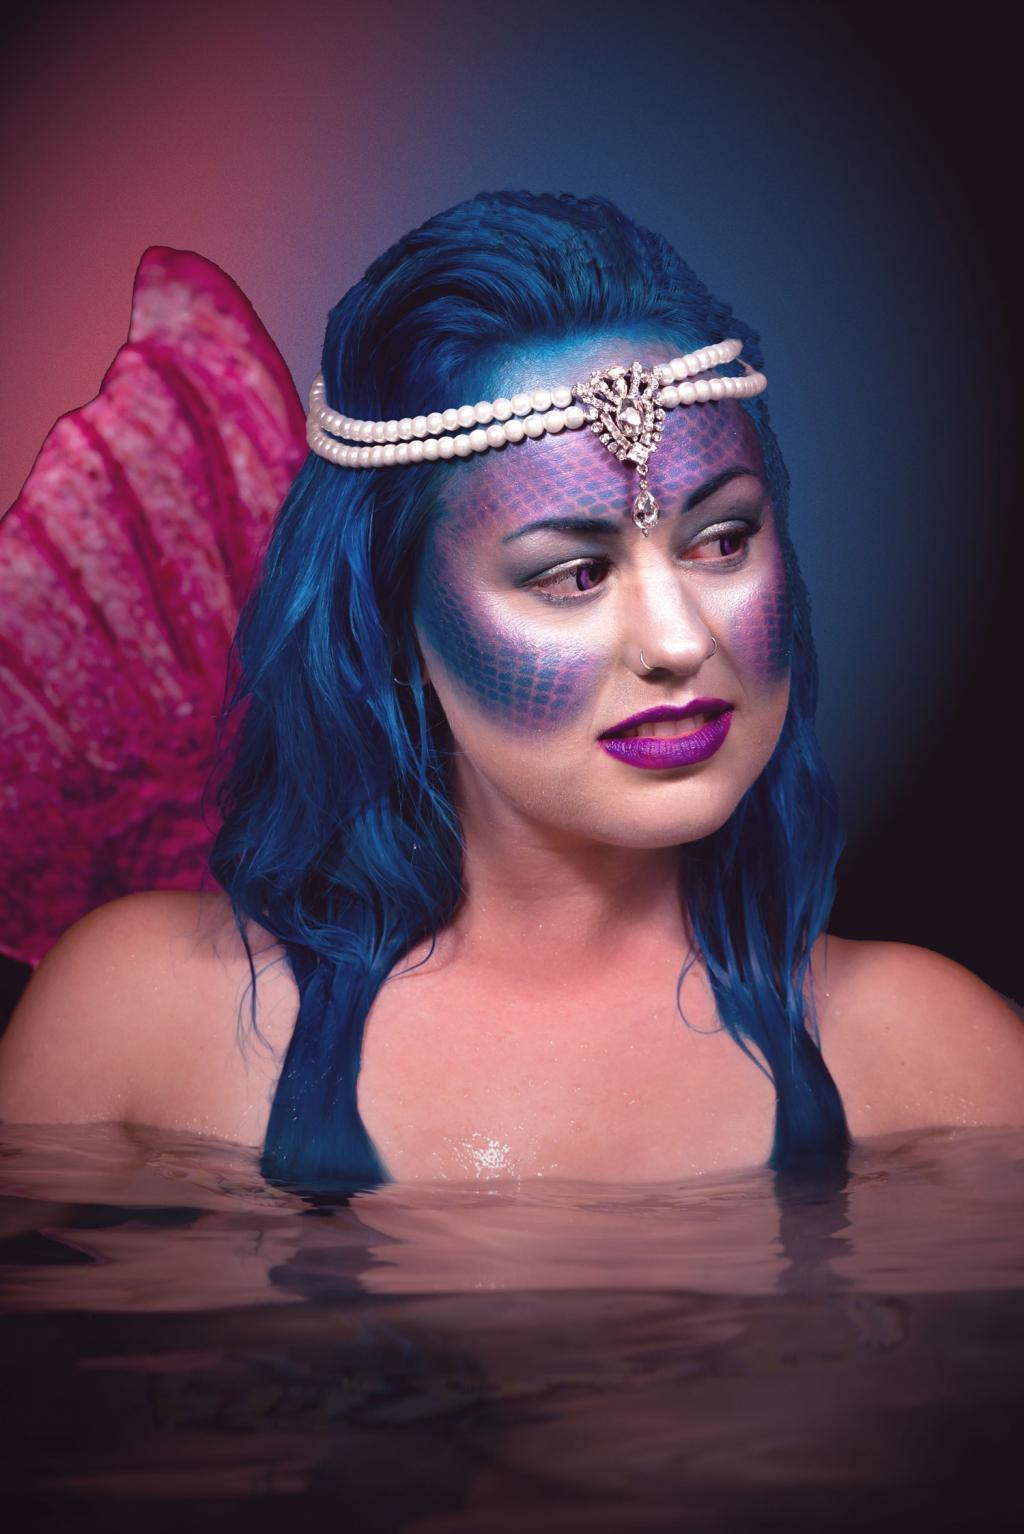 Mermaid_Makeup_istock-Lpcornish (c) Fishnet Technique - image©istock/Lpcornish